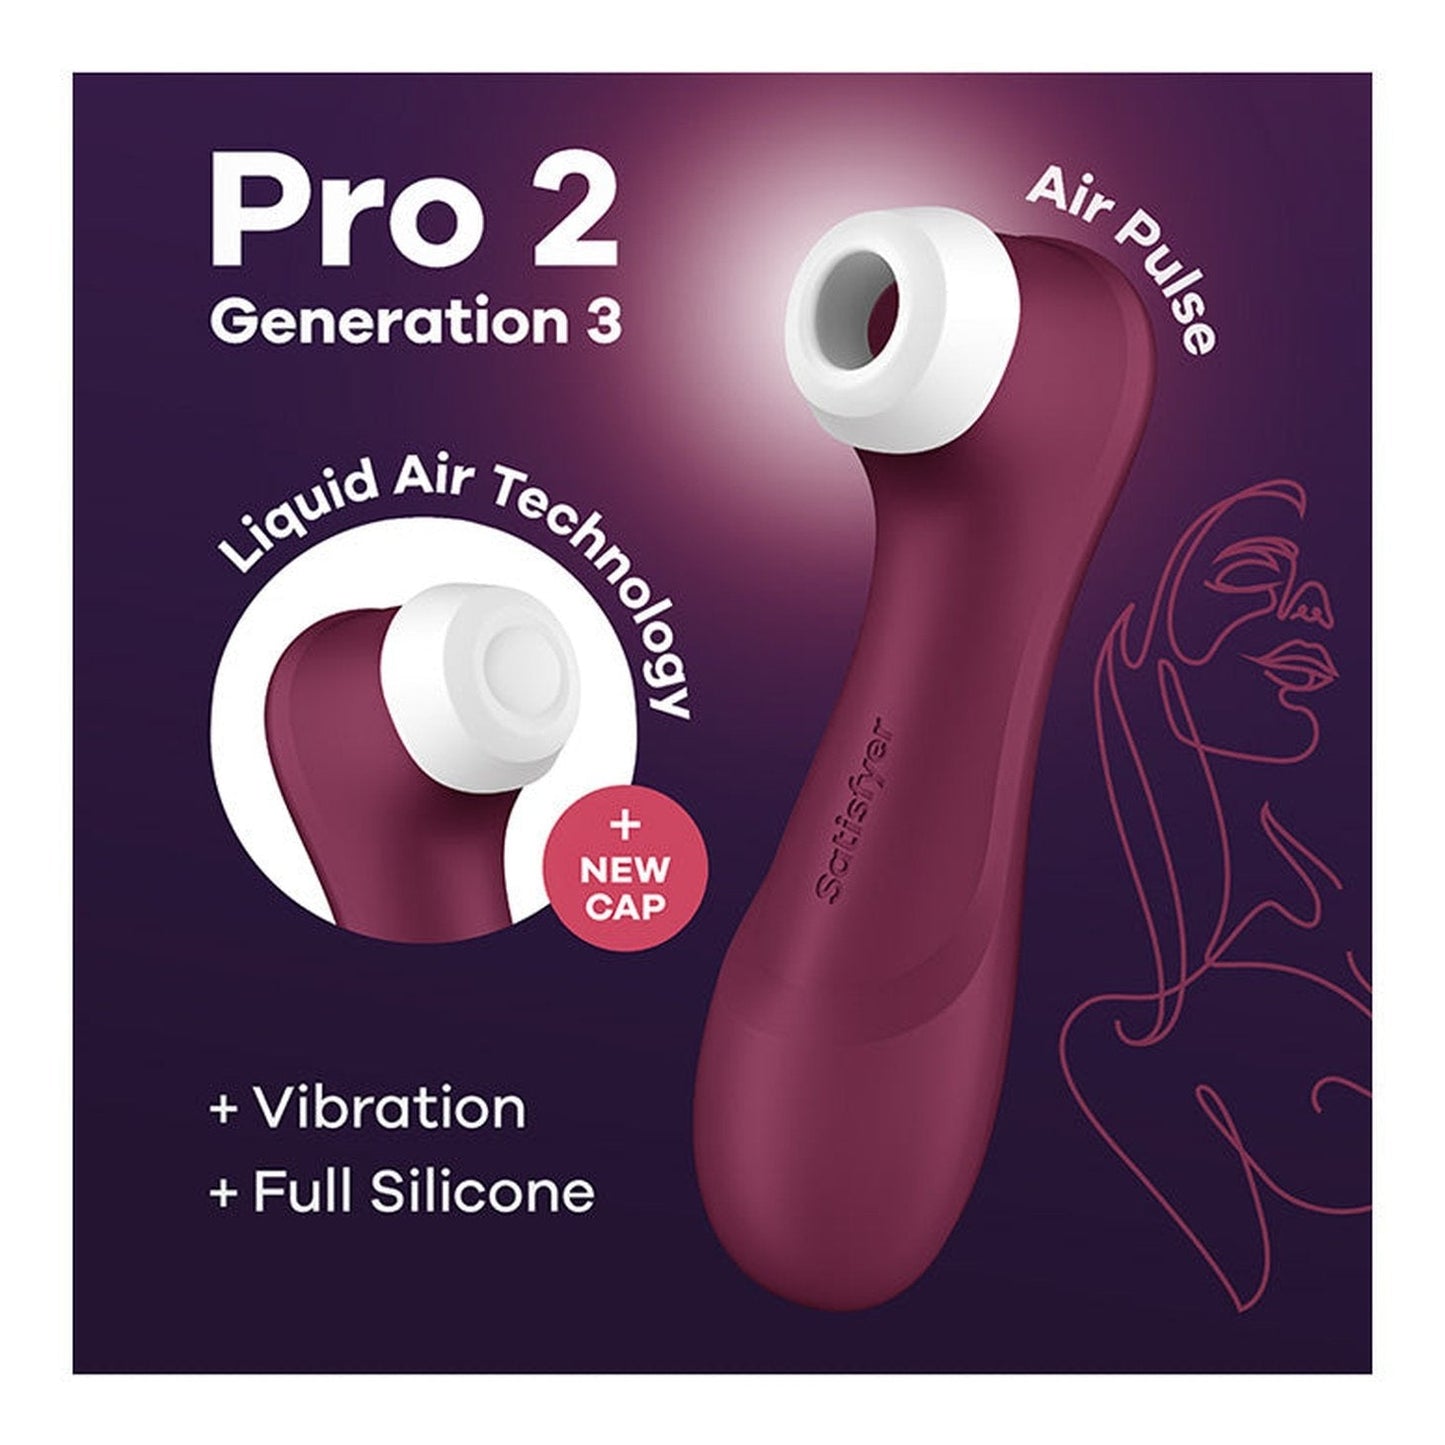 Pro 2 Generation 3 - Liquid Air